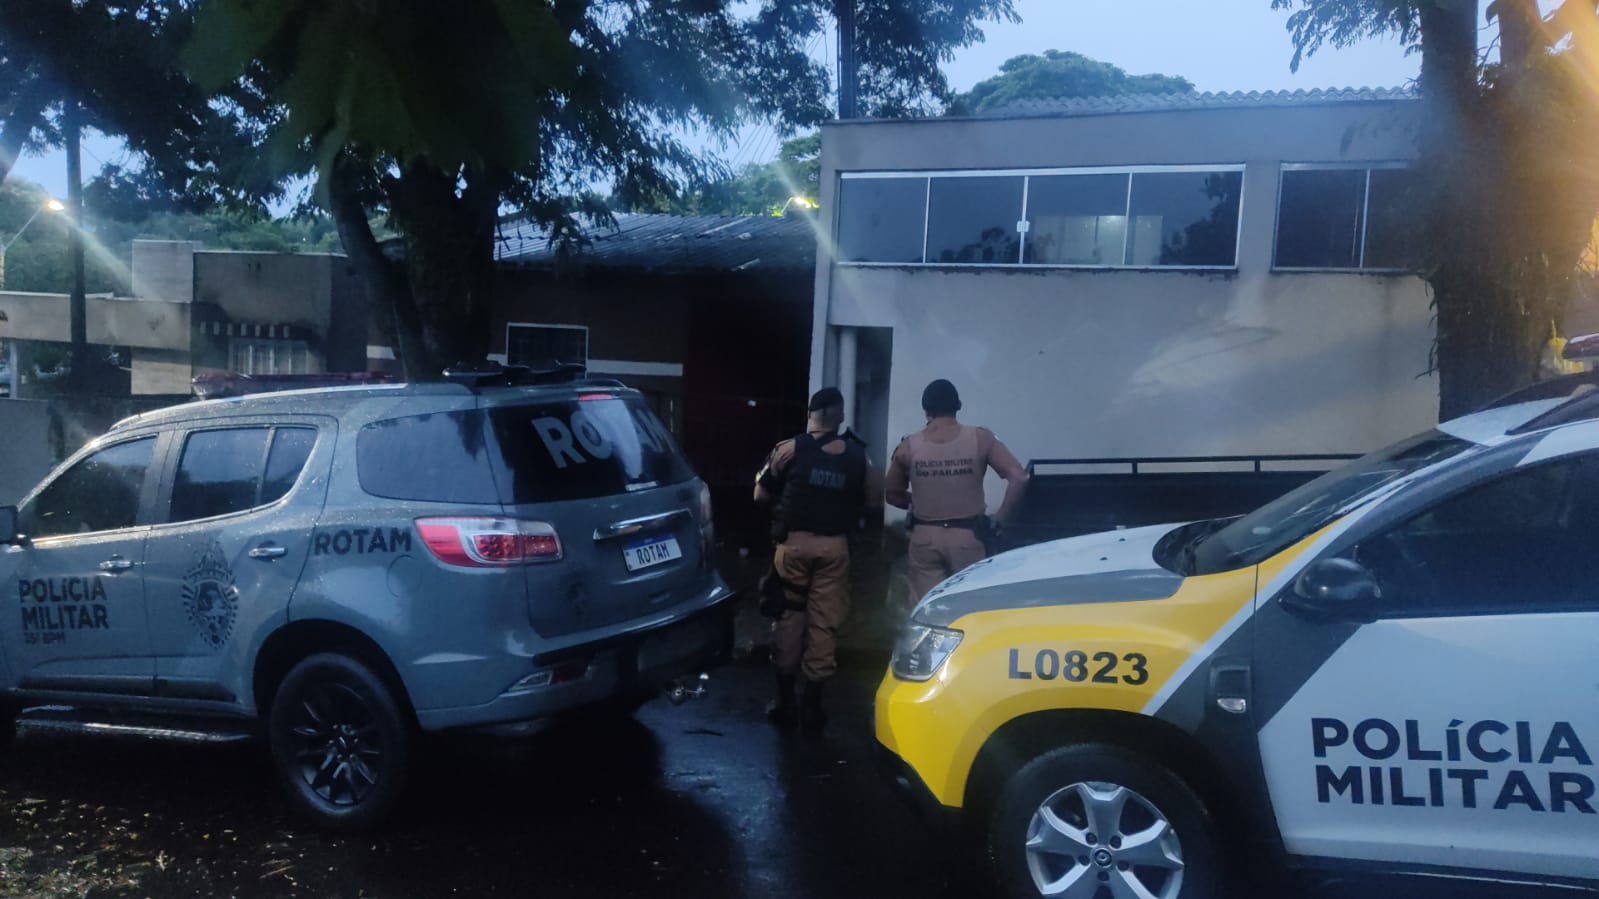 Jornal Ilustrado - Suspeitos de homicídios e tentativa de latrocínio são alvos de operação em Umuarama  